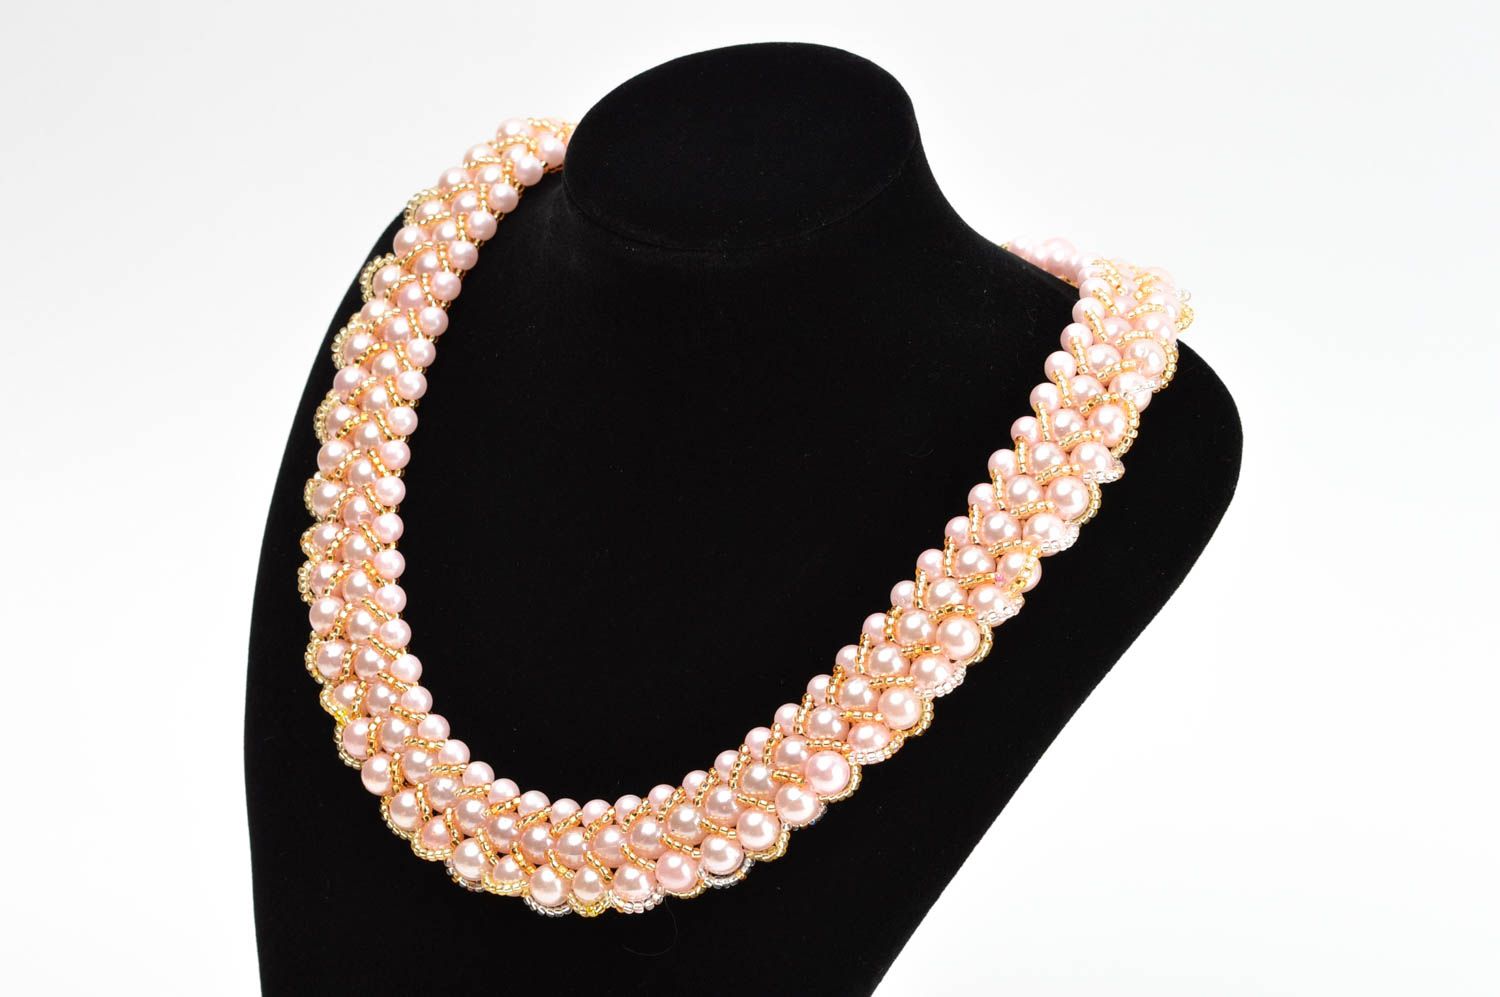 Handmade beaded necklace stylish designer necklace elegant accessory gift photo 1